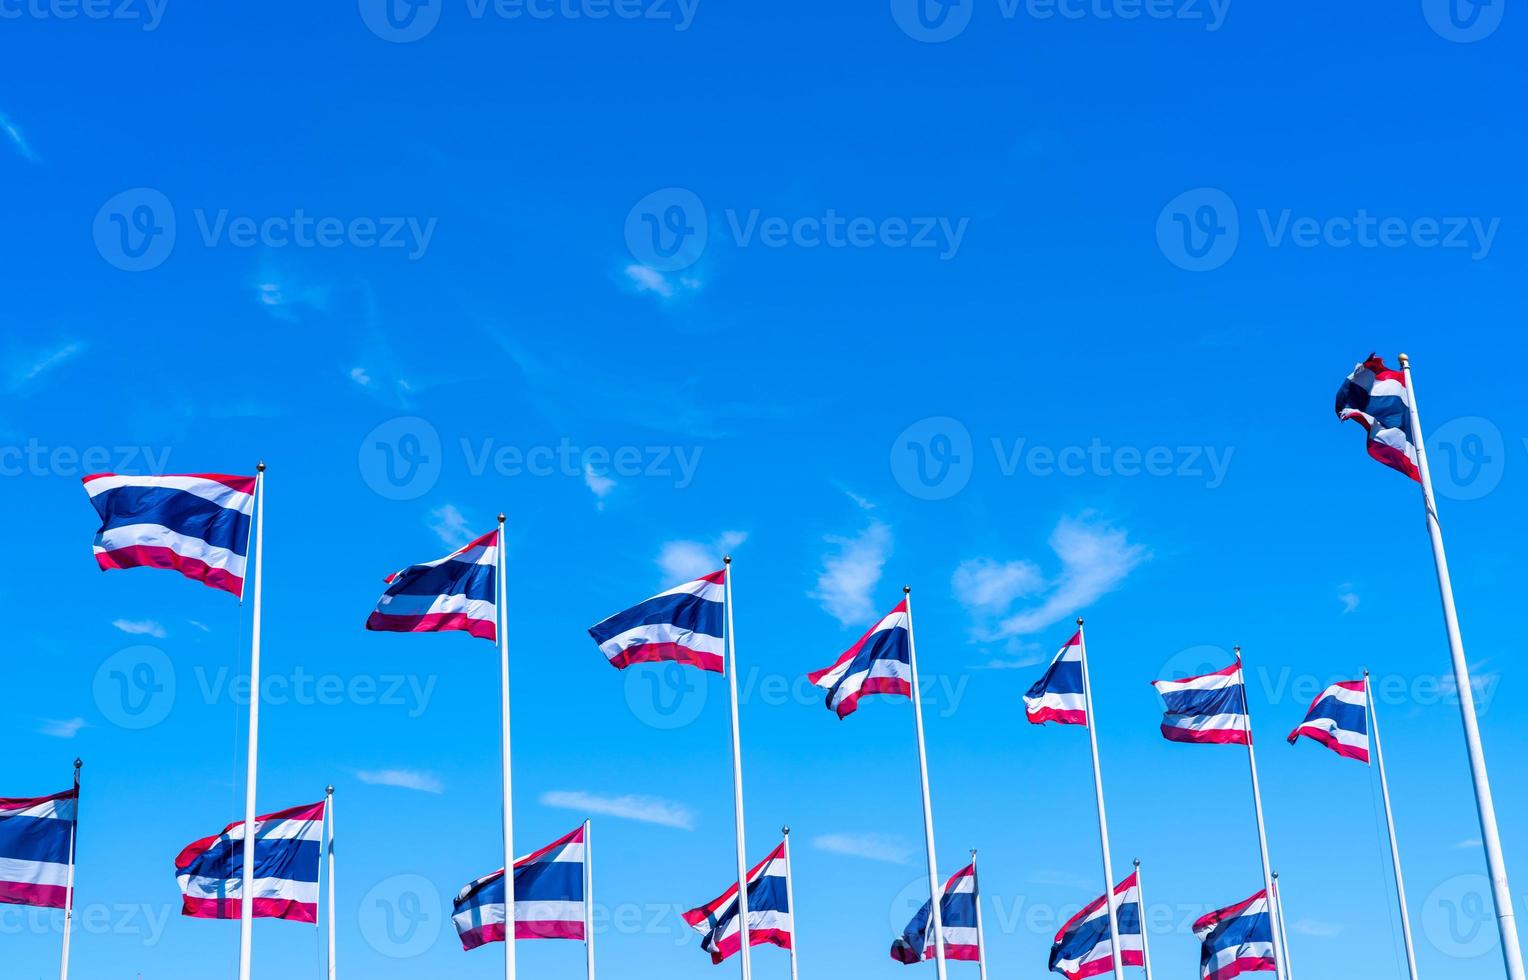 molti della bandiera della Tailandia sventolano sopra il pennone contro il cielo blu. la bandiera tailandese è stata disegnata in cima all'asta della bandiera. tessuto rettangolare di colore rosso, blu e bianco. bandiera nazionale del regno di thailandia. foto